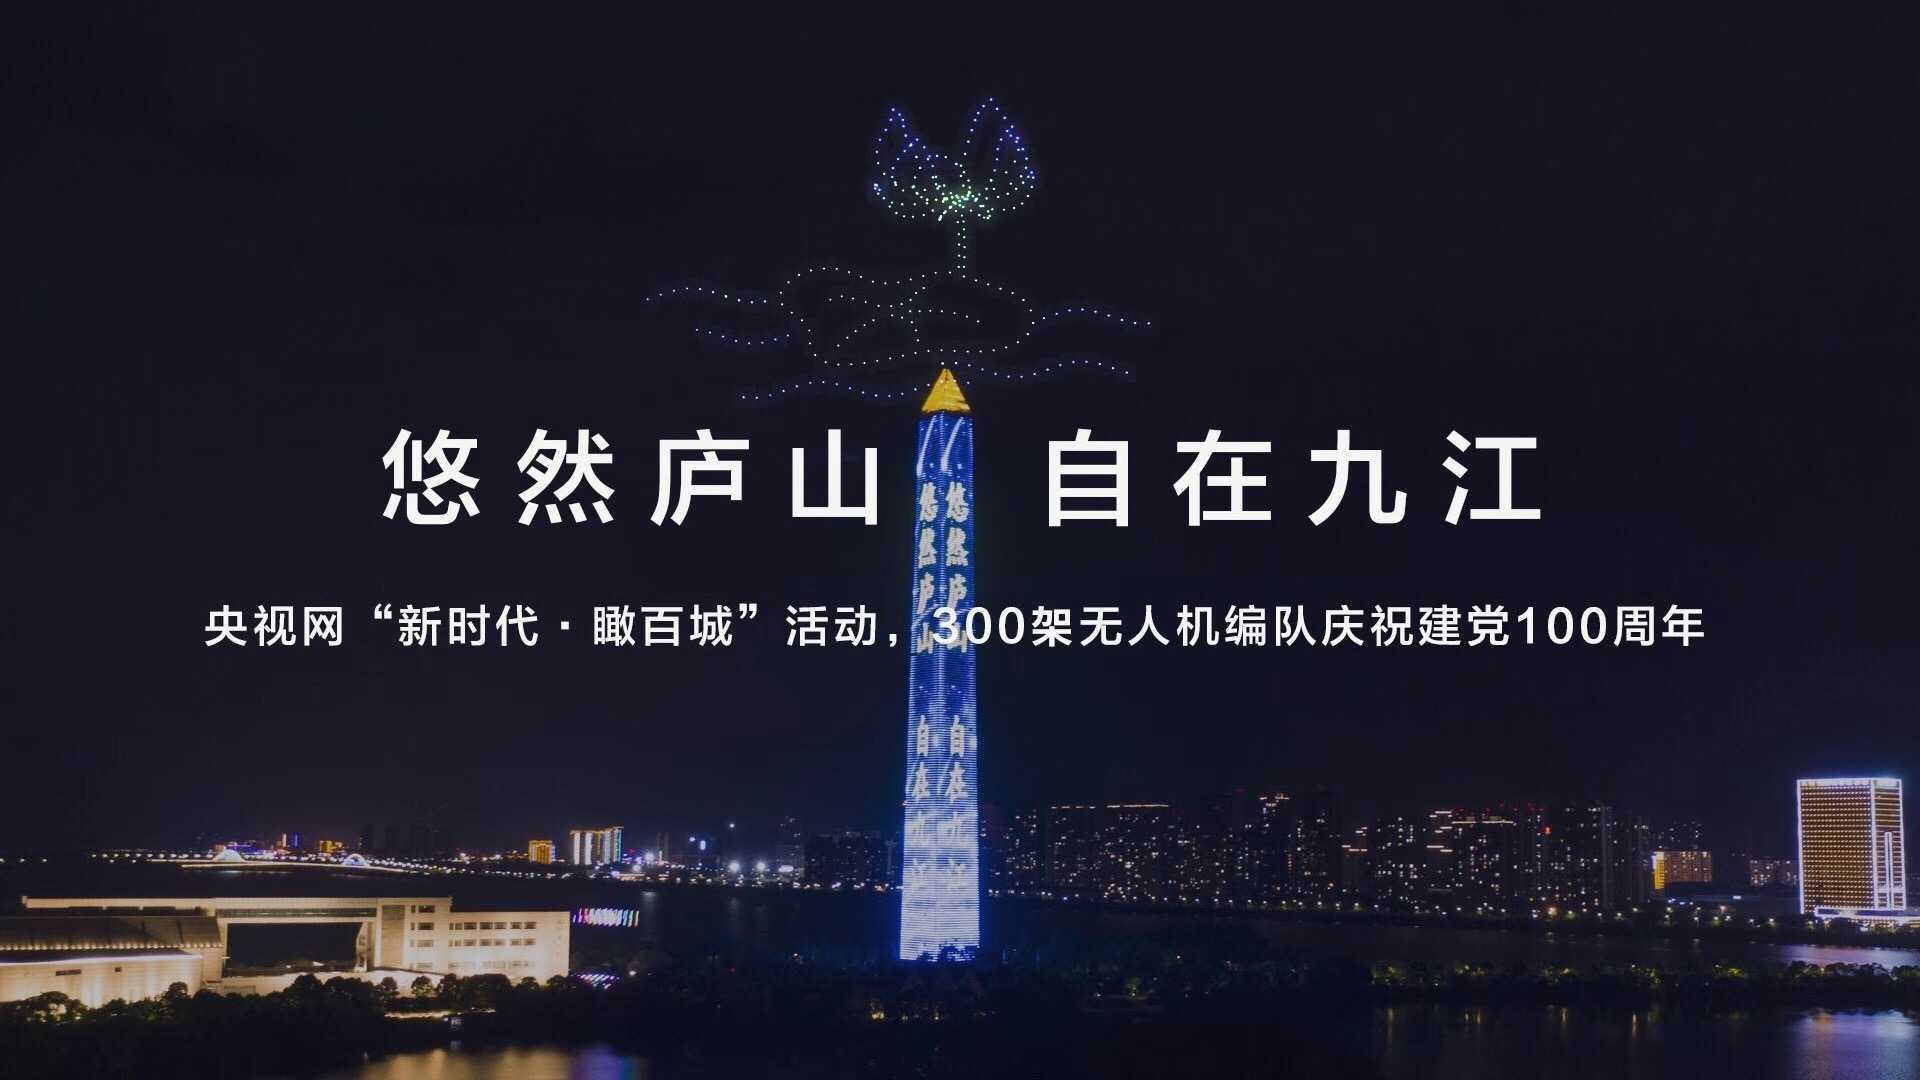 “新时代·瞰百城”，300架无人机庆祝建党100周年。